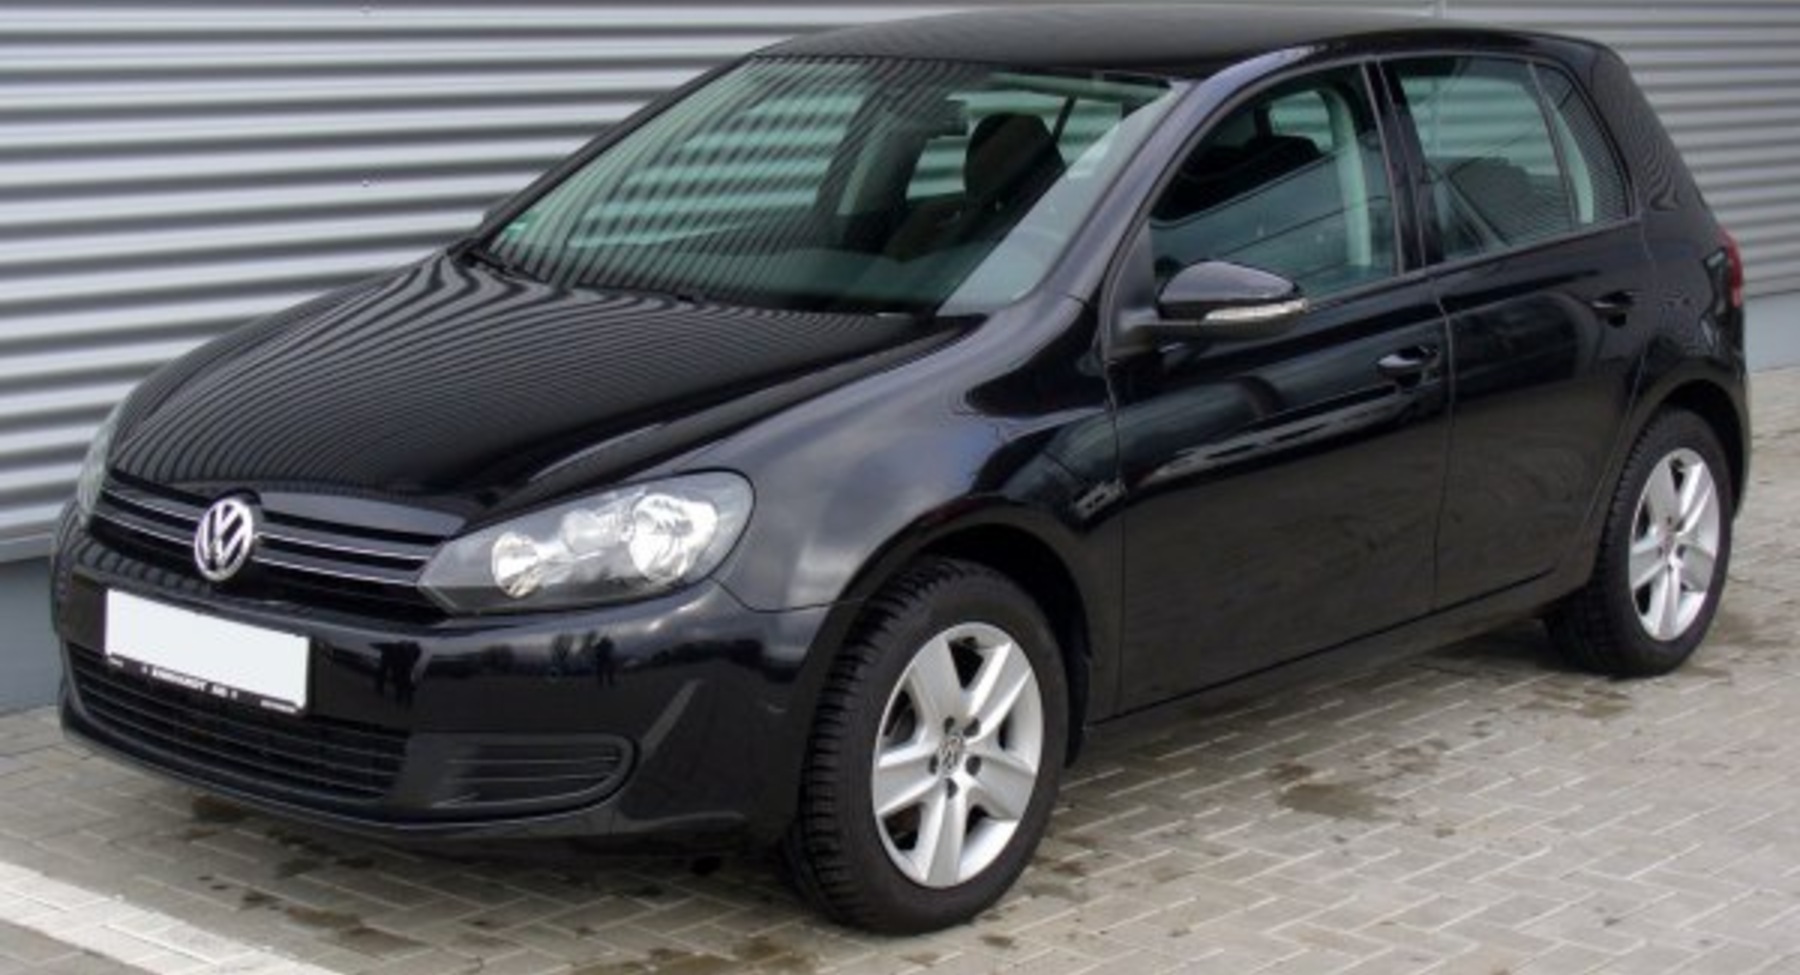 Volkswagen Golf VI (5-door) 1.2 TSI (105 Hp) 2009, 2010, 2011, 2012 